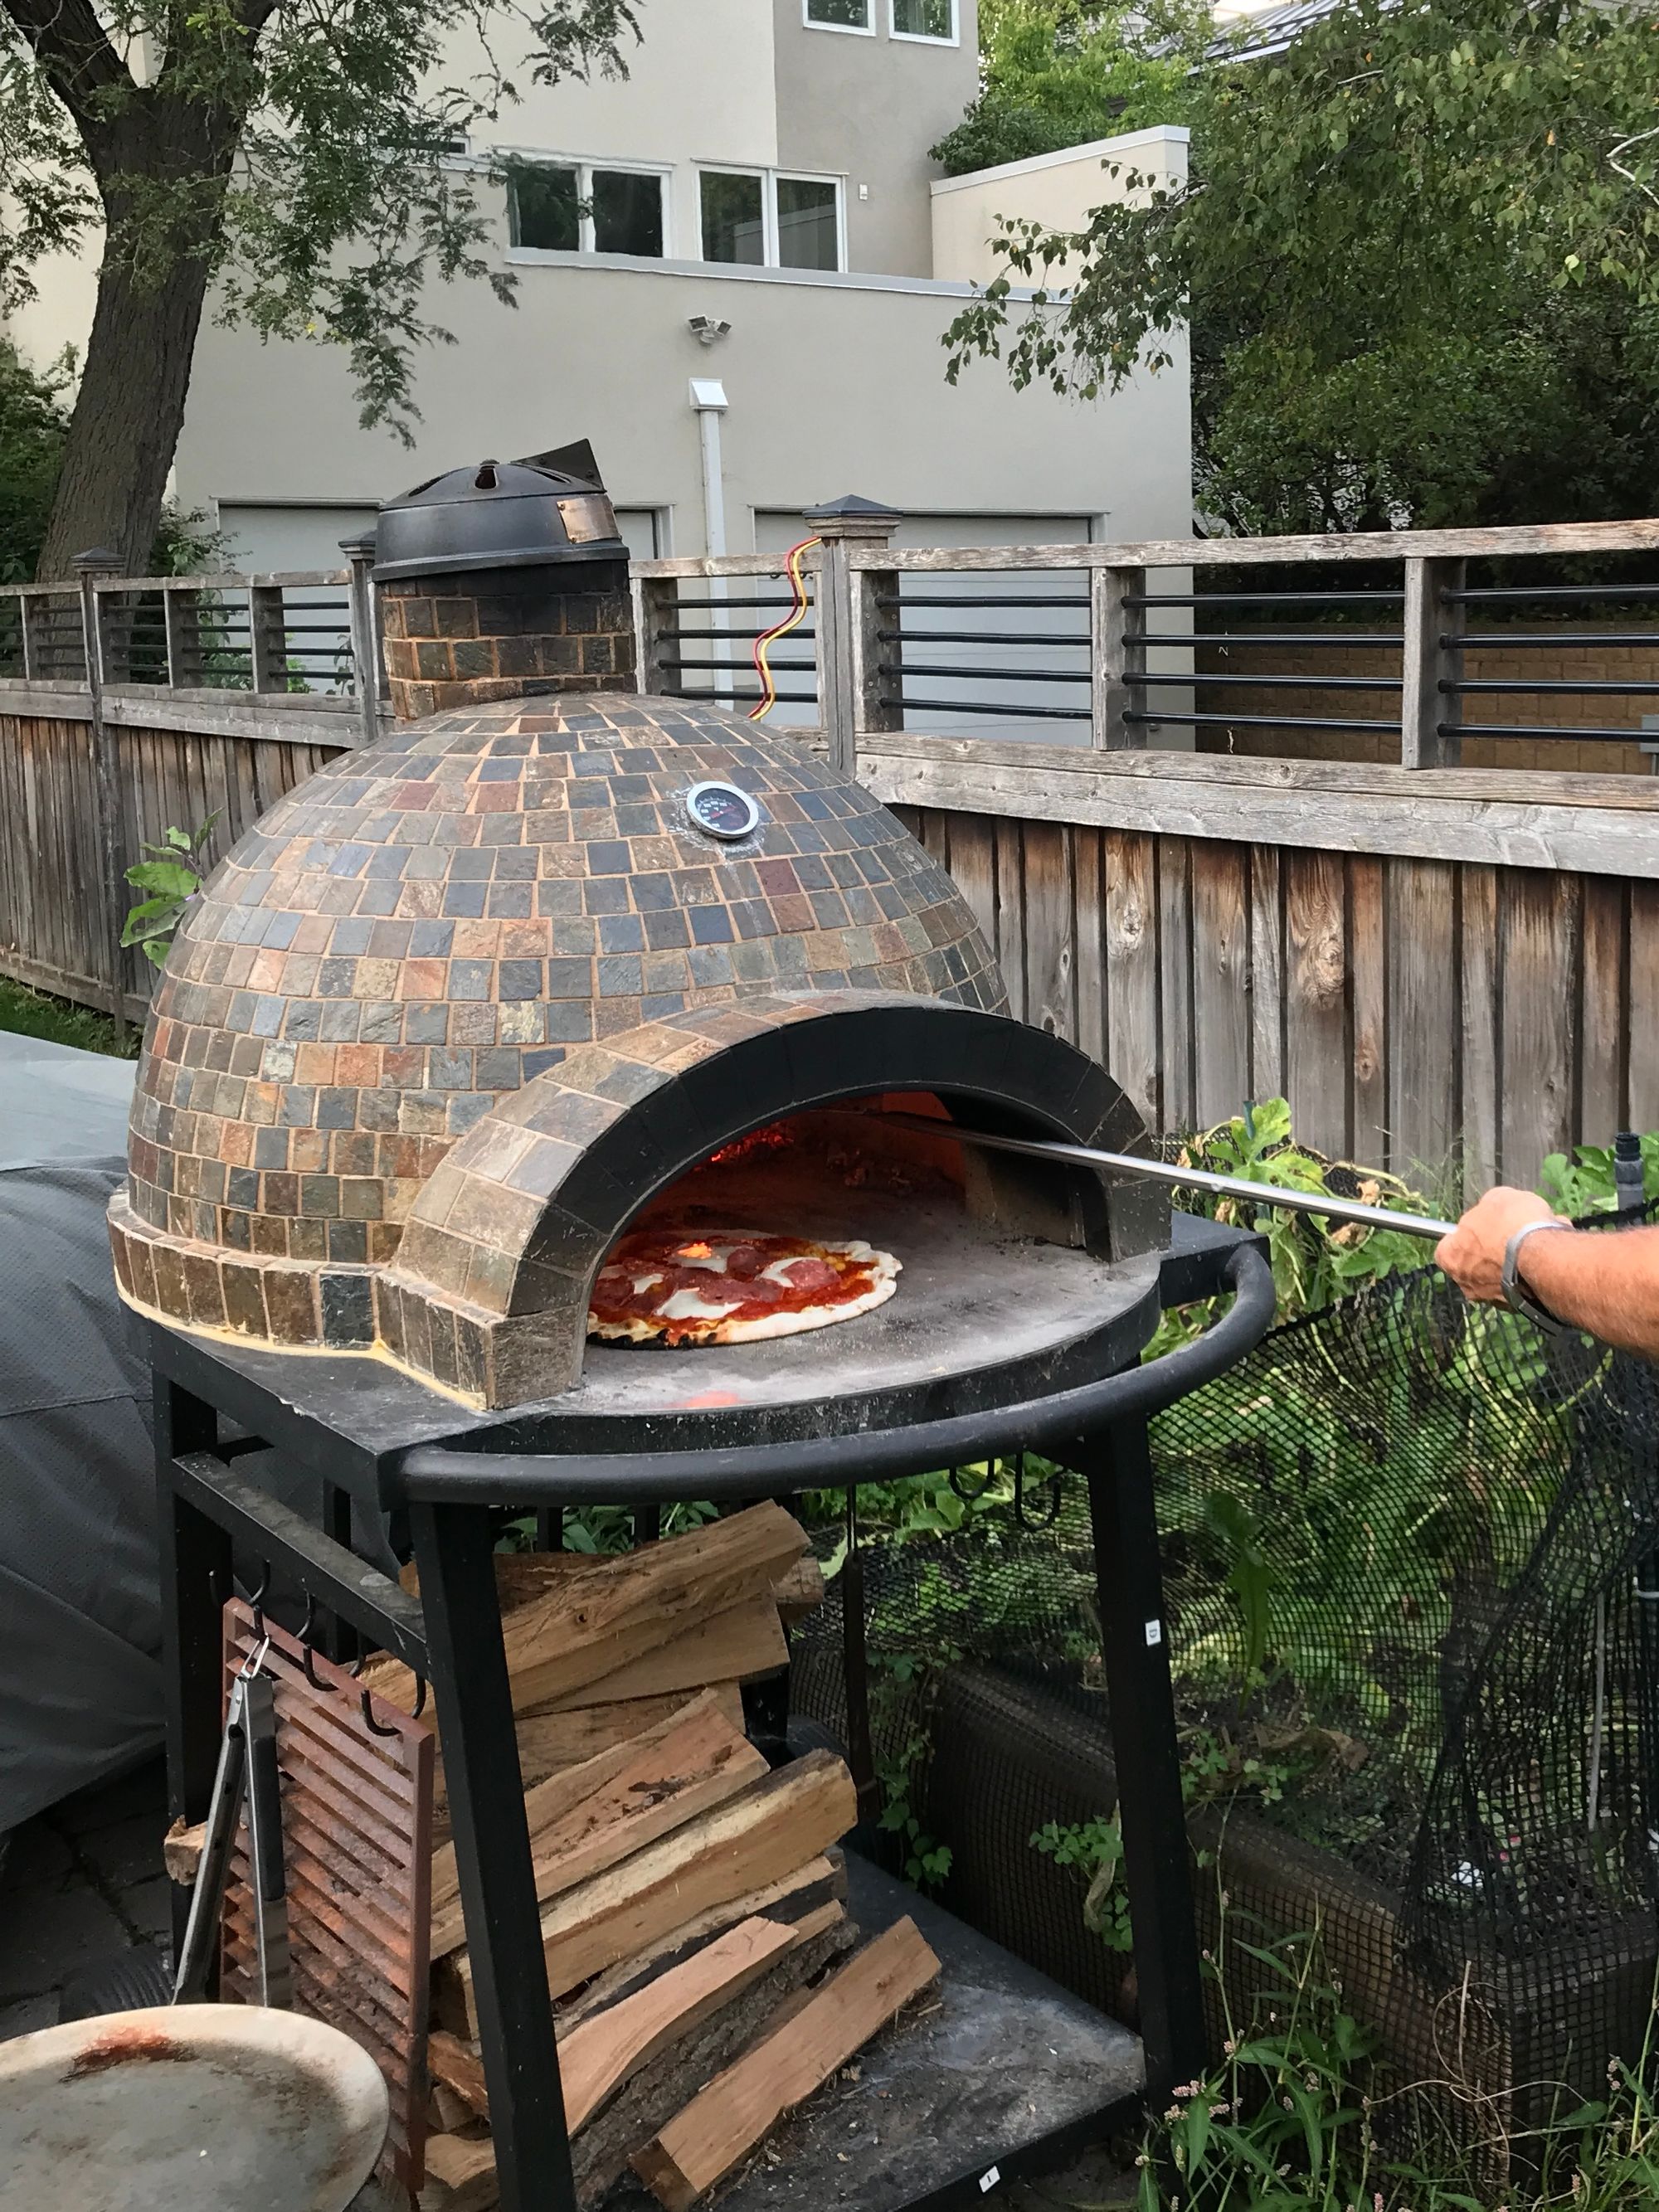 Making Homemade Pizza, yum! - Summer 2020